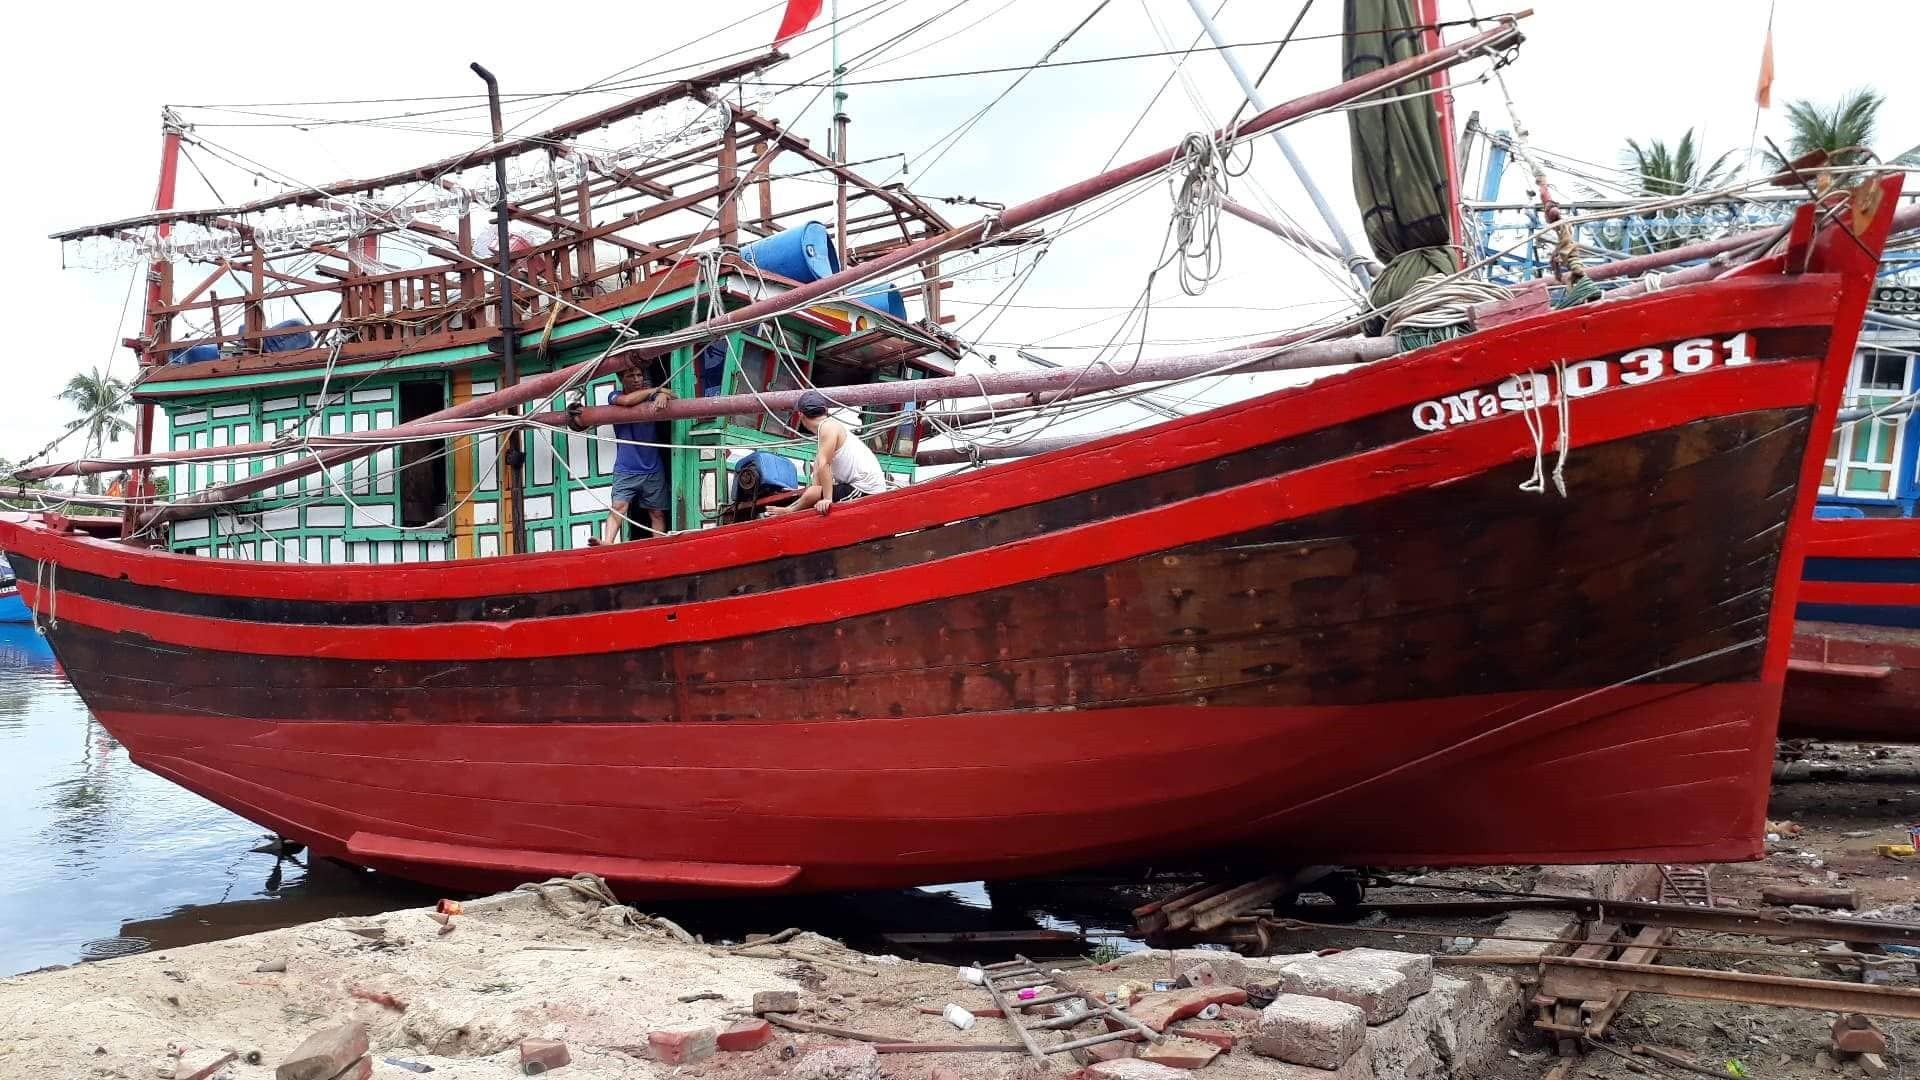 Sau chuyến sửa chữa vào năm 2018, Trần Văn Thuận cùng những người góp vốn đã quyết định bán con tàu. Ảnh: T.T